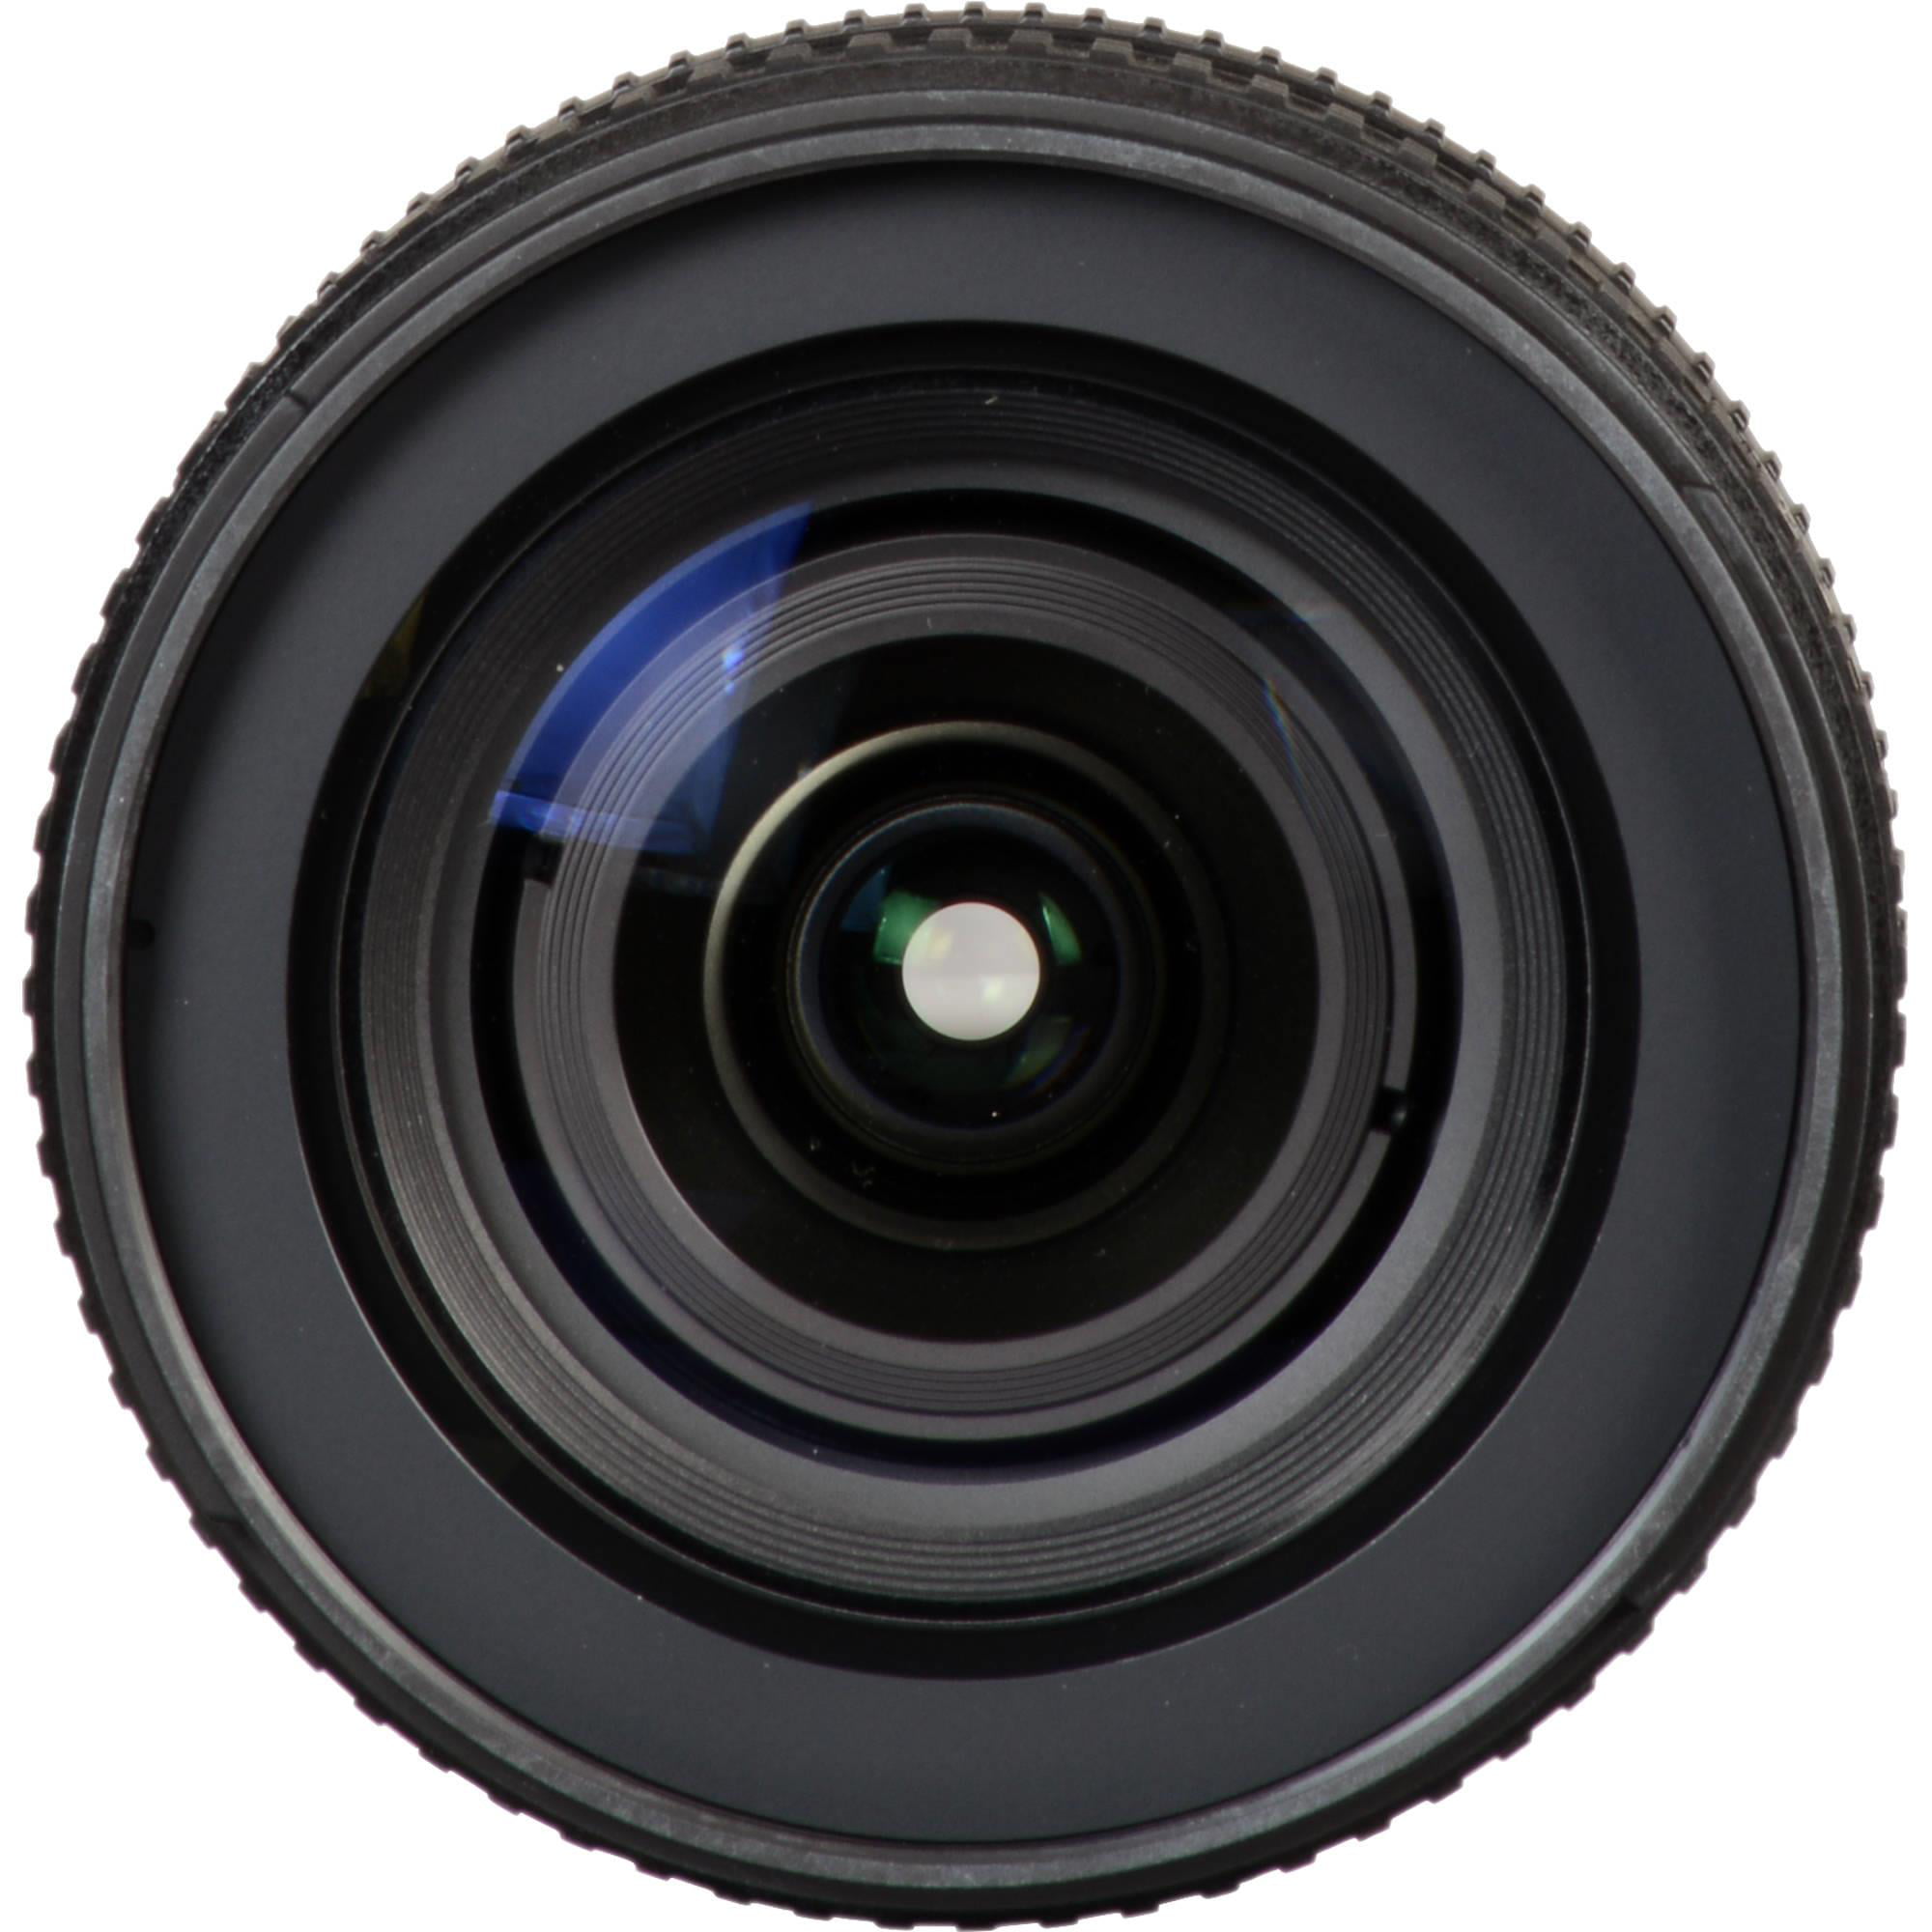 Nikon AF-S DX NIKKOR 16-80mm f/2.8-4E ED VR Lens (White Box) with 